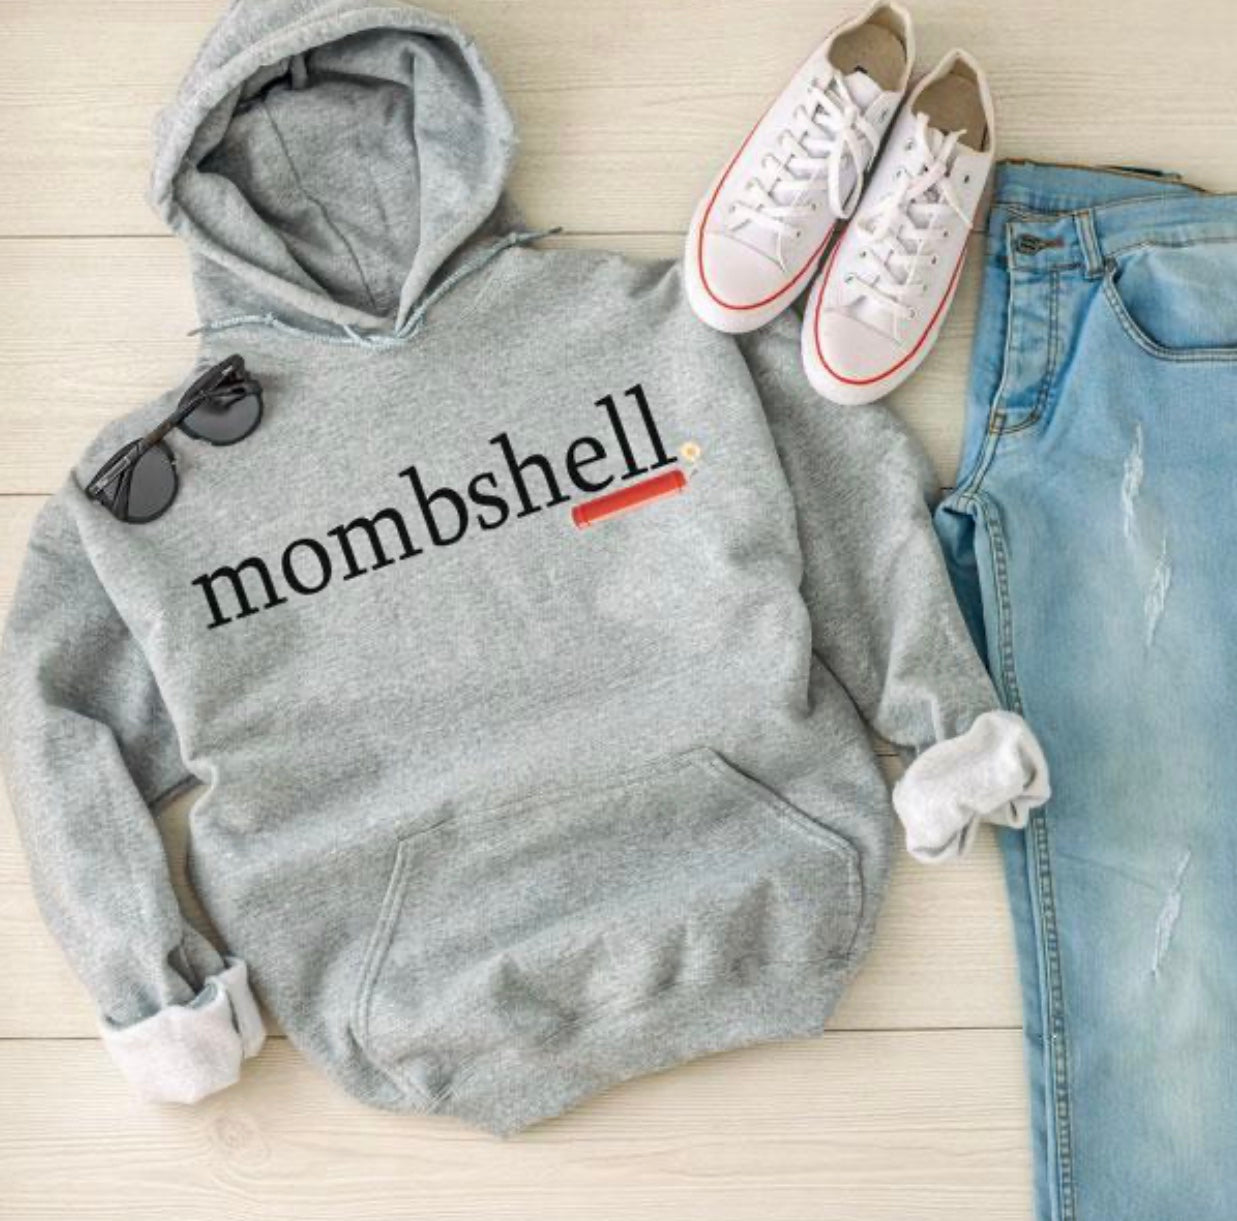 Mombshell